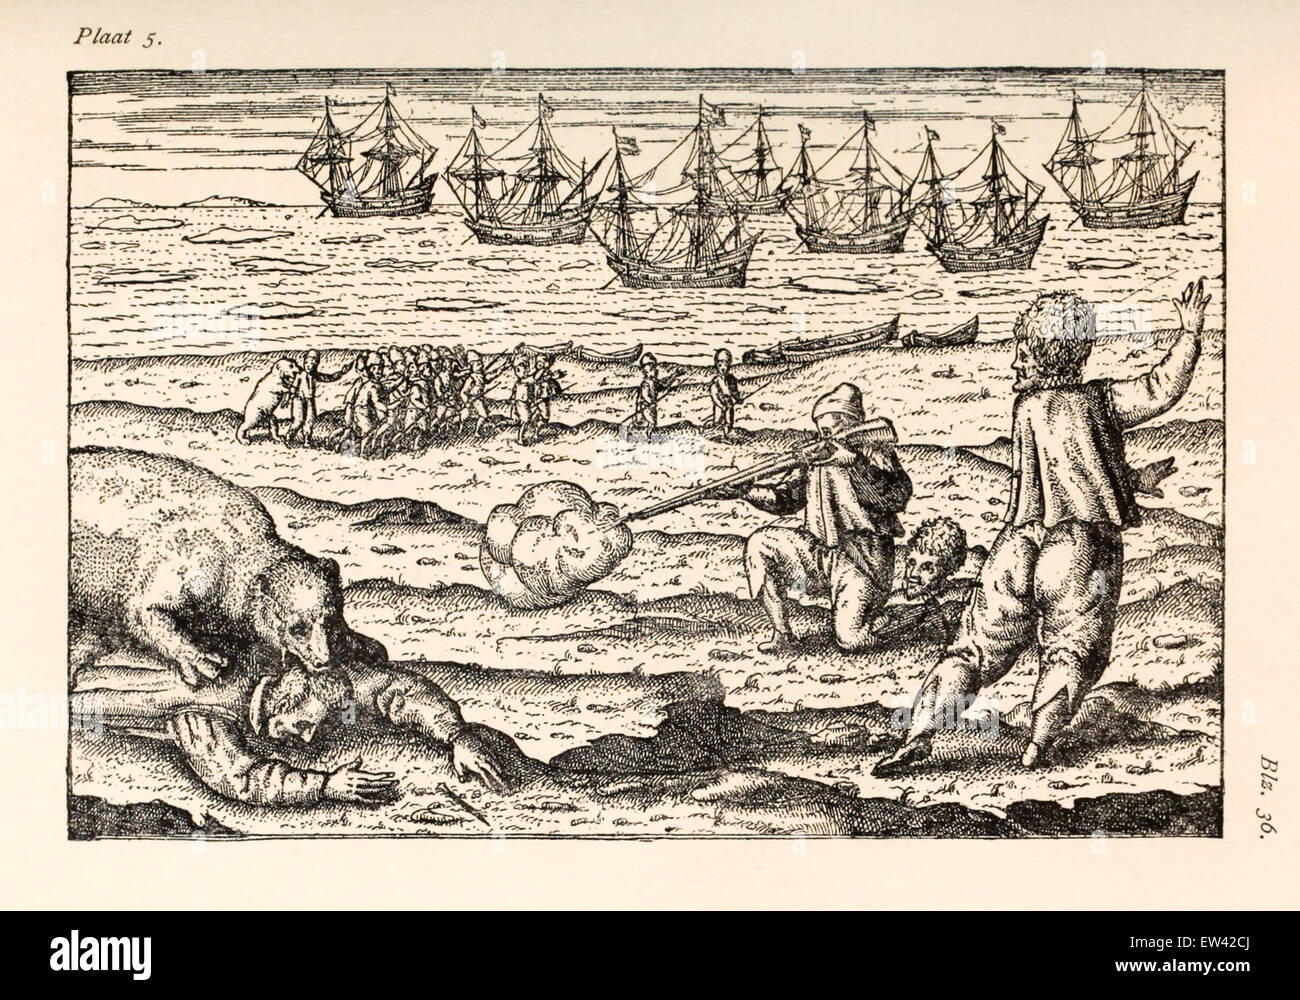 Szene aus der dritten Reise, Besatzung von Eisbären angegriffen. Willem Barentsz (1550-1597) Illustration von Henricus Hondius (1573 –1650). Siehe Beschreibung für mehr Informationen. Stockfoto